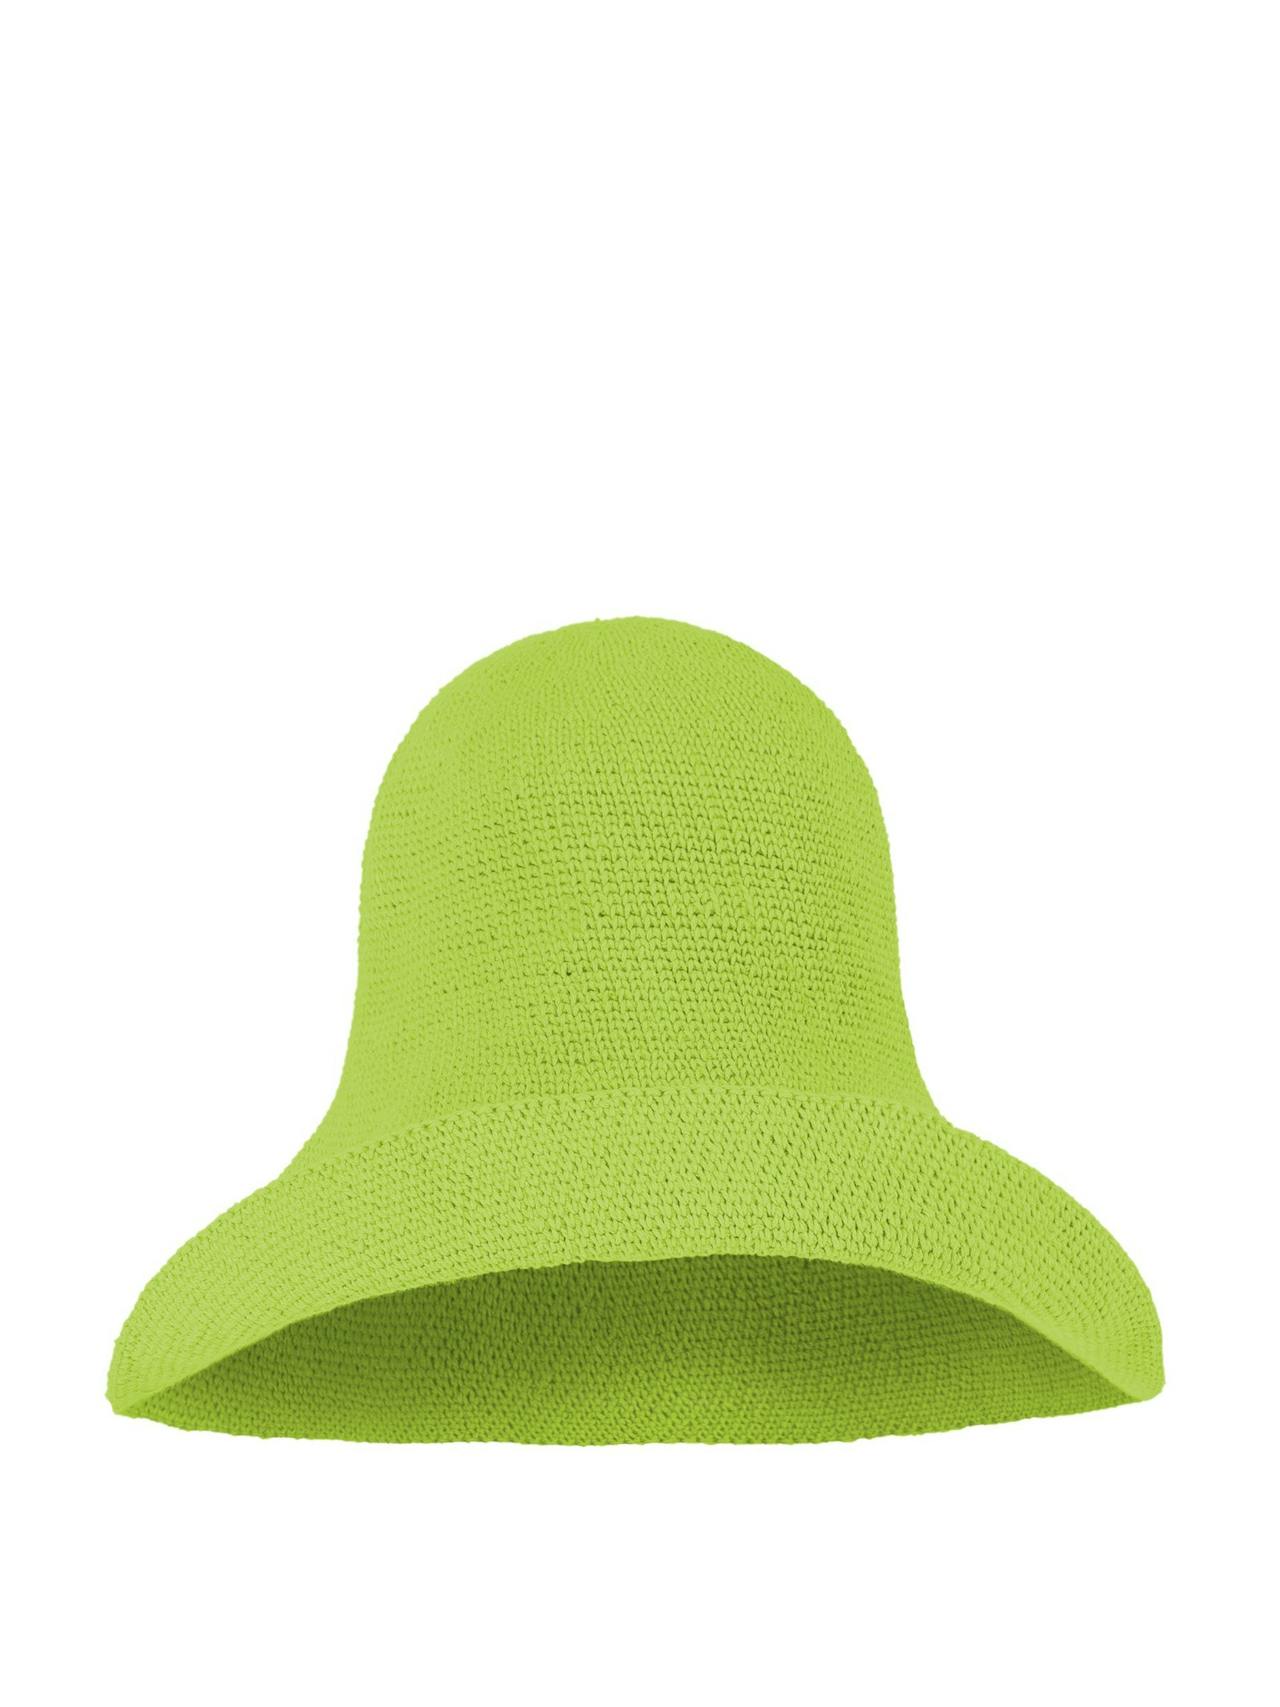 Bloom crochet sun hat in lime green